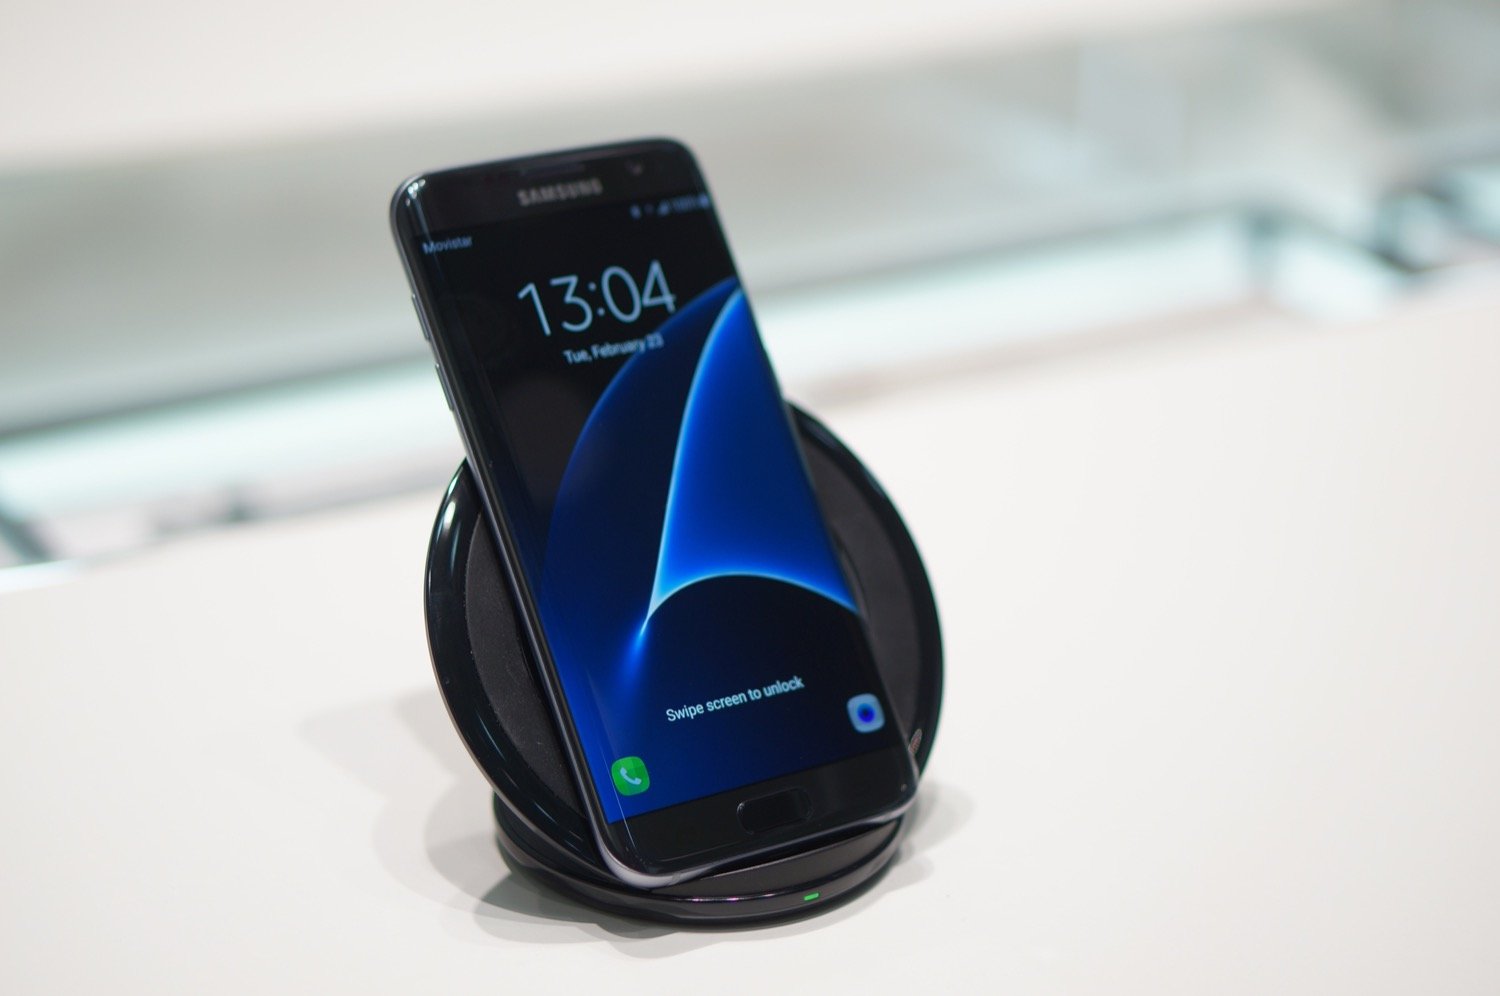 Chargeur téléphone portable Samsung CHARGEUR A INDUCTION NOIR POUR